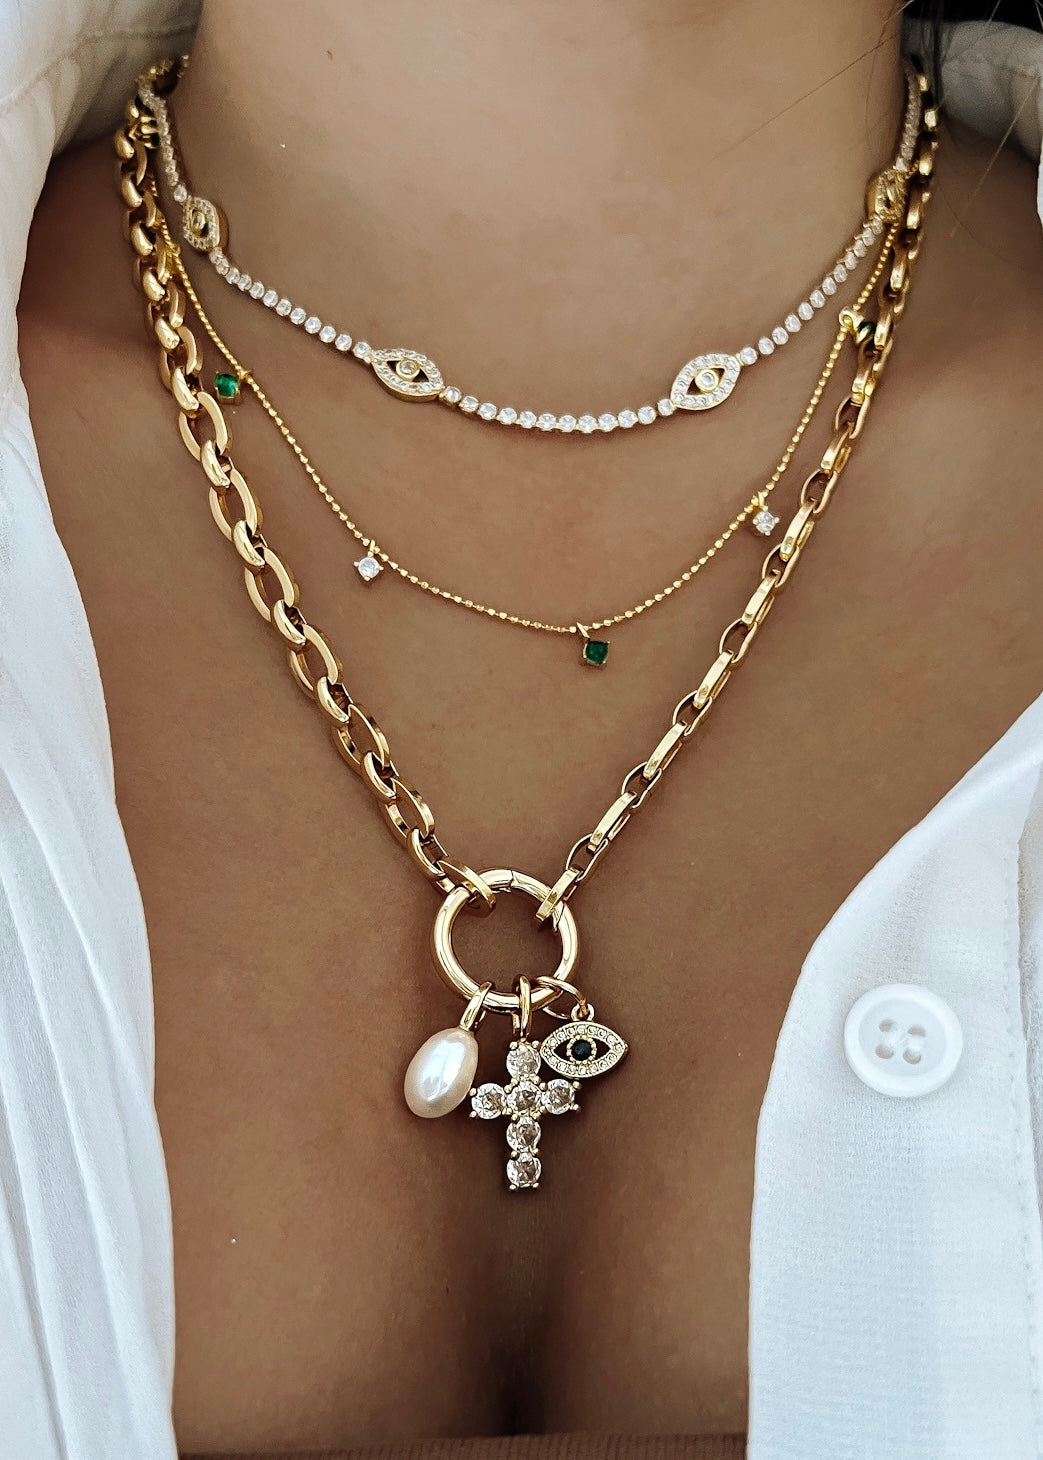 Diamond Cross & Evil Eye Necklace - Gold Filled